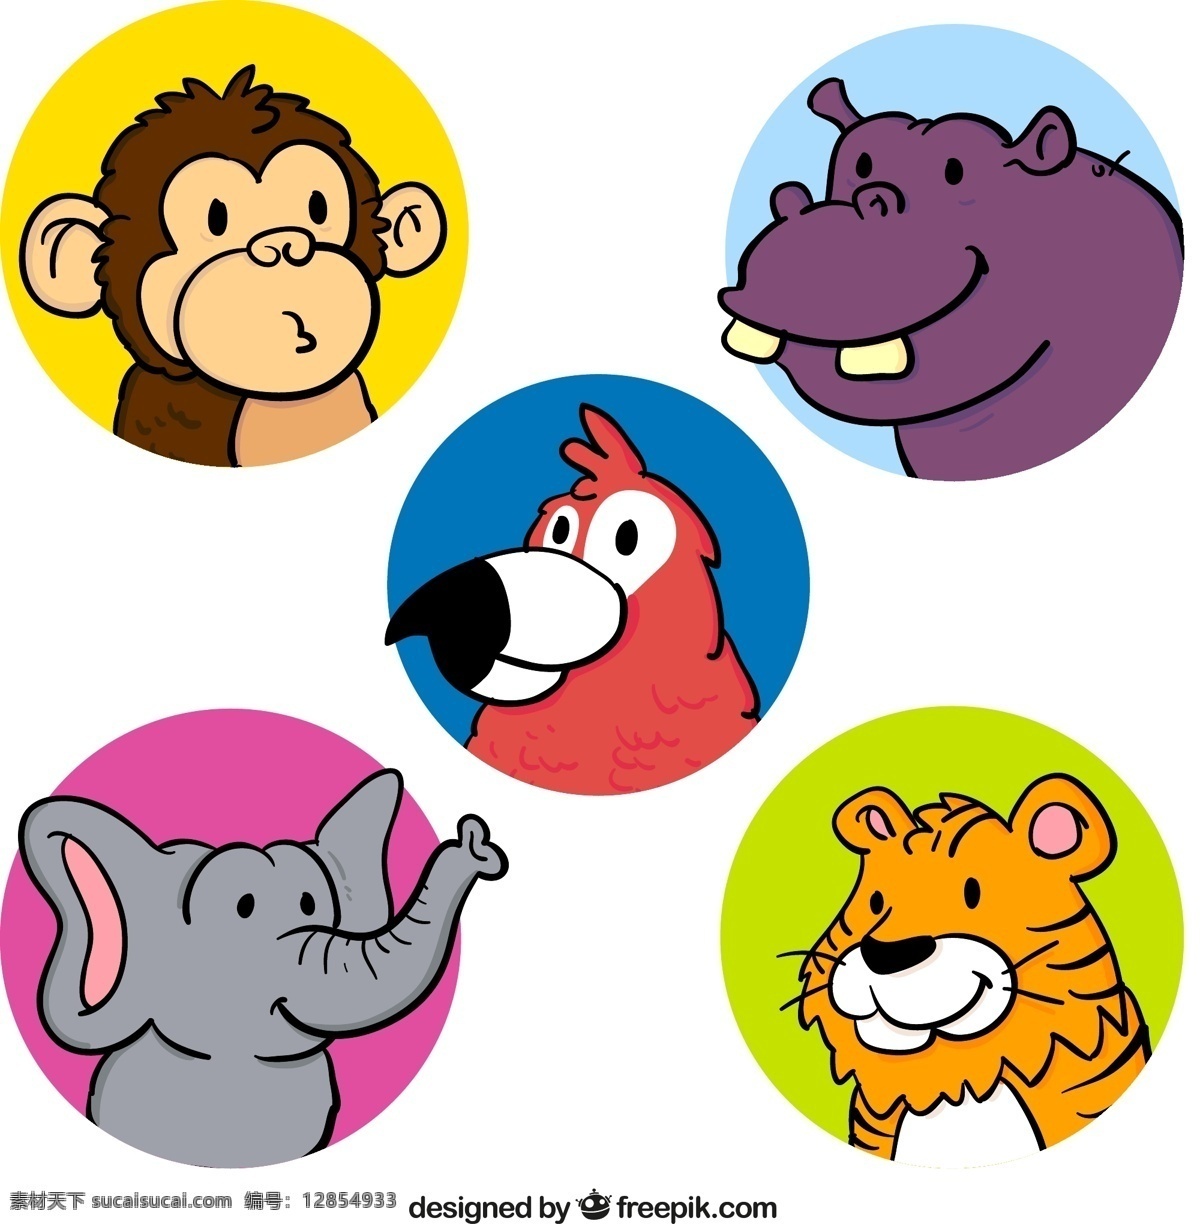 款 彩色 动物 头像 矢量 动物头像 圆形头像 猴子 河马 鹦鹉 大象 老虎 矢量图 ai格式